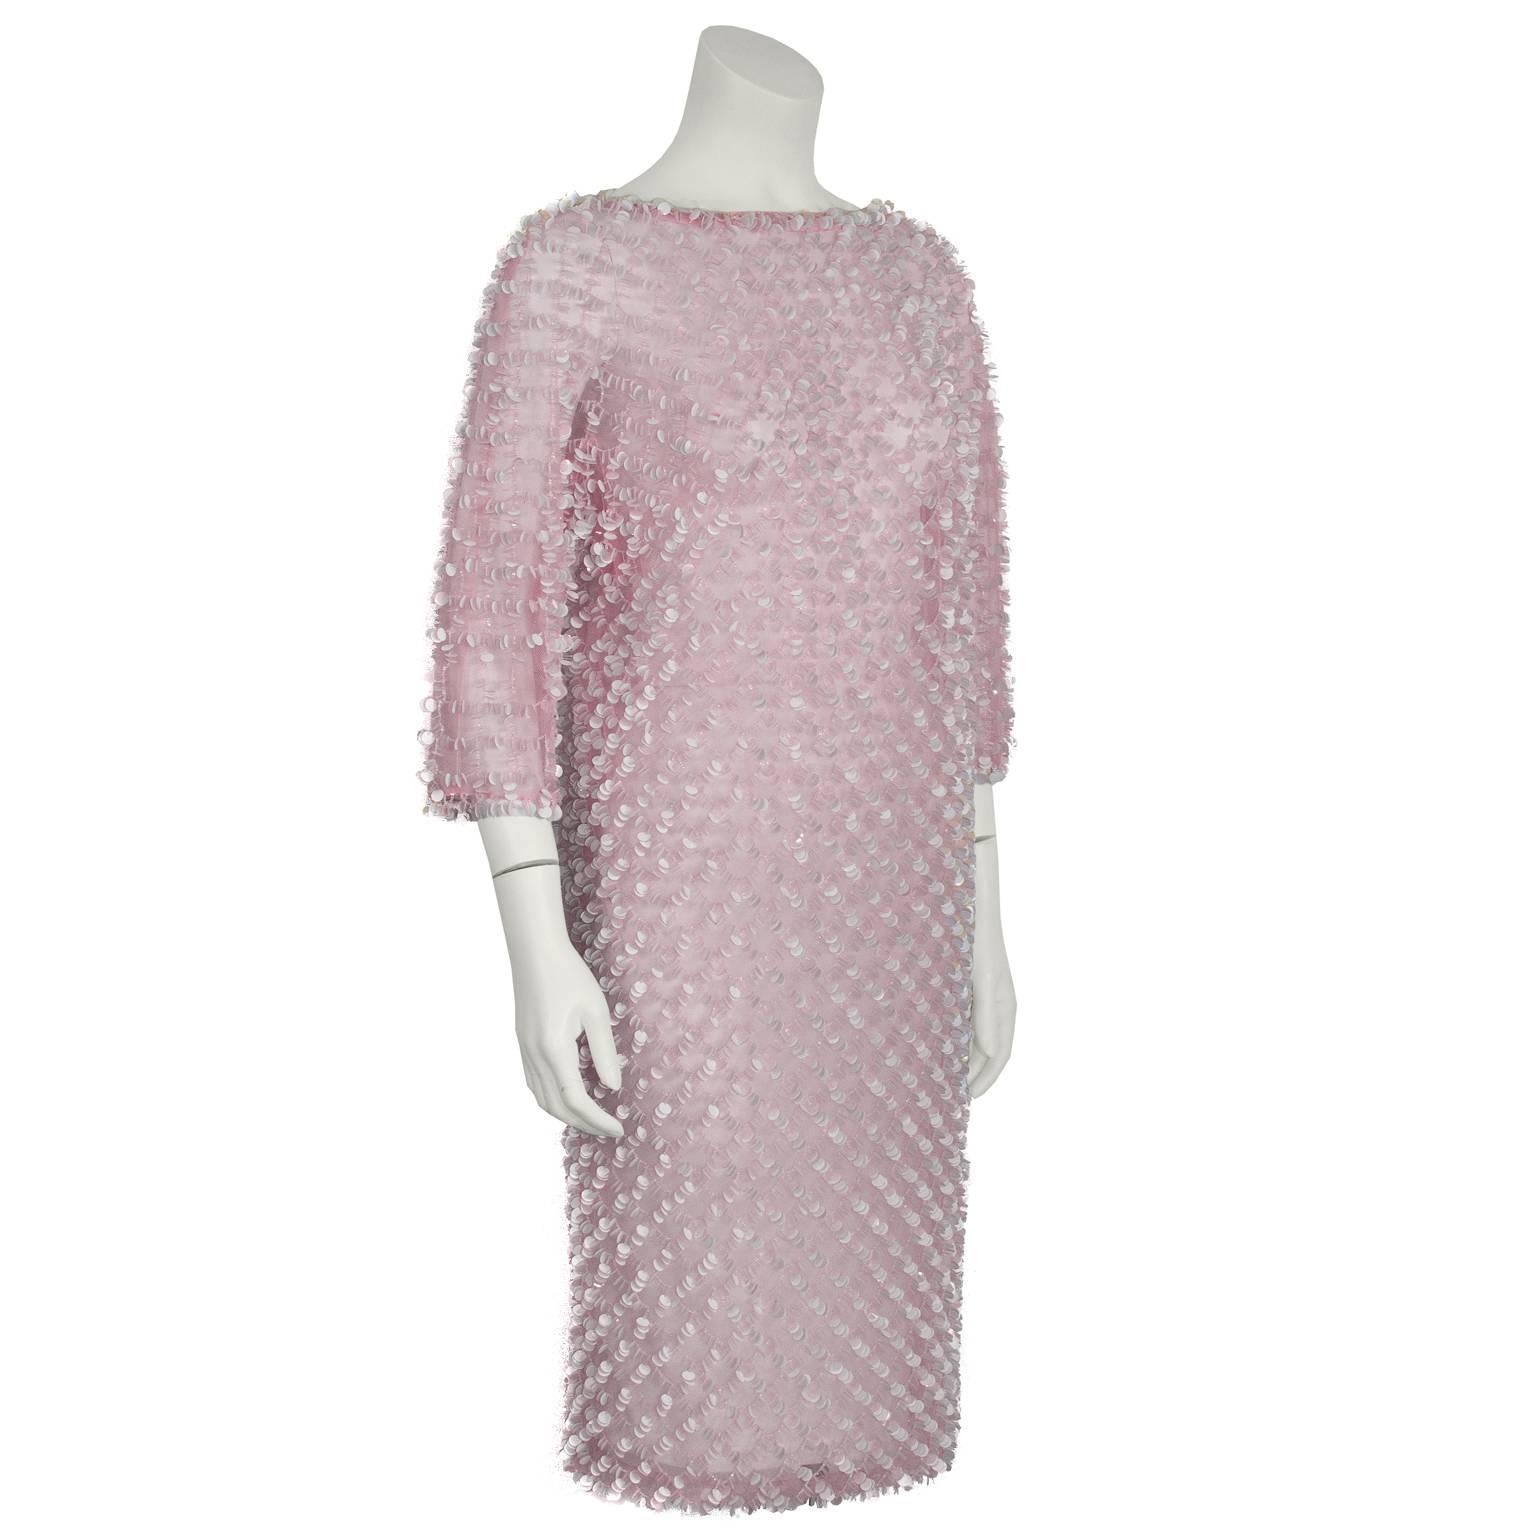 robe en filet rose pâle importée de Hong Kong dans les années 1960, avec un motif perlé de paillettes iridescentes blanches et roses sur toute la surface. Encolure bateau qui descend dans le dos, manches trois quarts. Fermez le dos. Elle est superbe